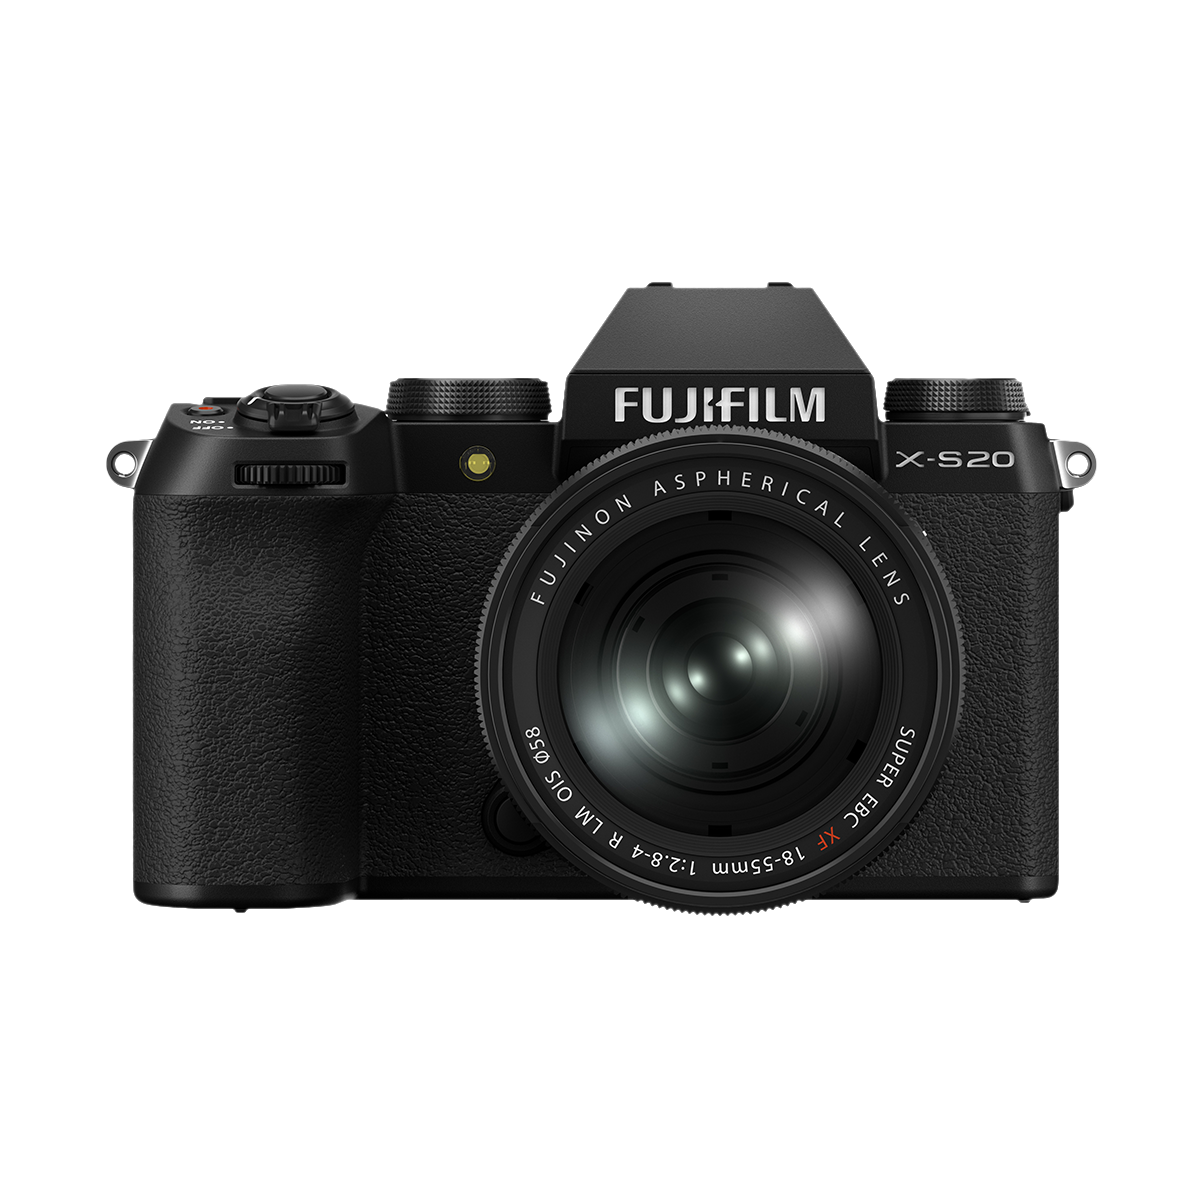 Fujifilm X-S20 Kit mit Fujifilm XF 18-55 mm 1:2,8-4,0 R LM OIS Standard Objektiv